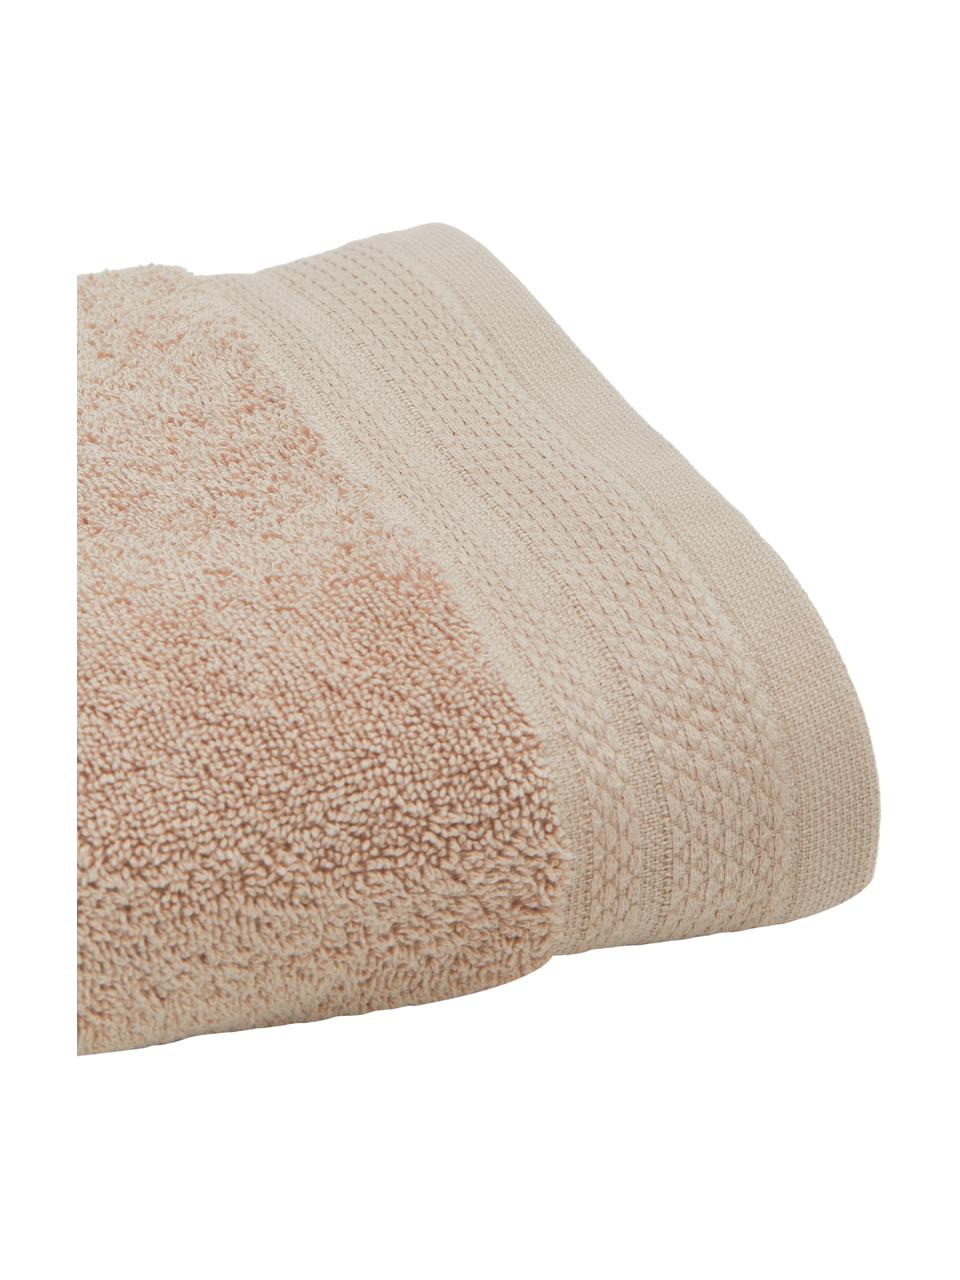 Komplet ręczników z bawełny organicznej Premium, 3 elem., Taupe, Komplet z różnymi rozmiarami